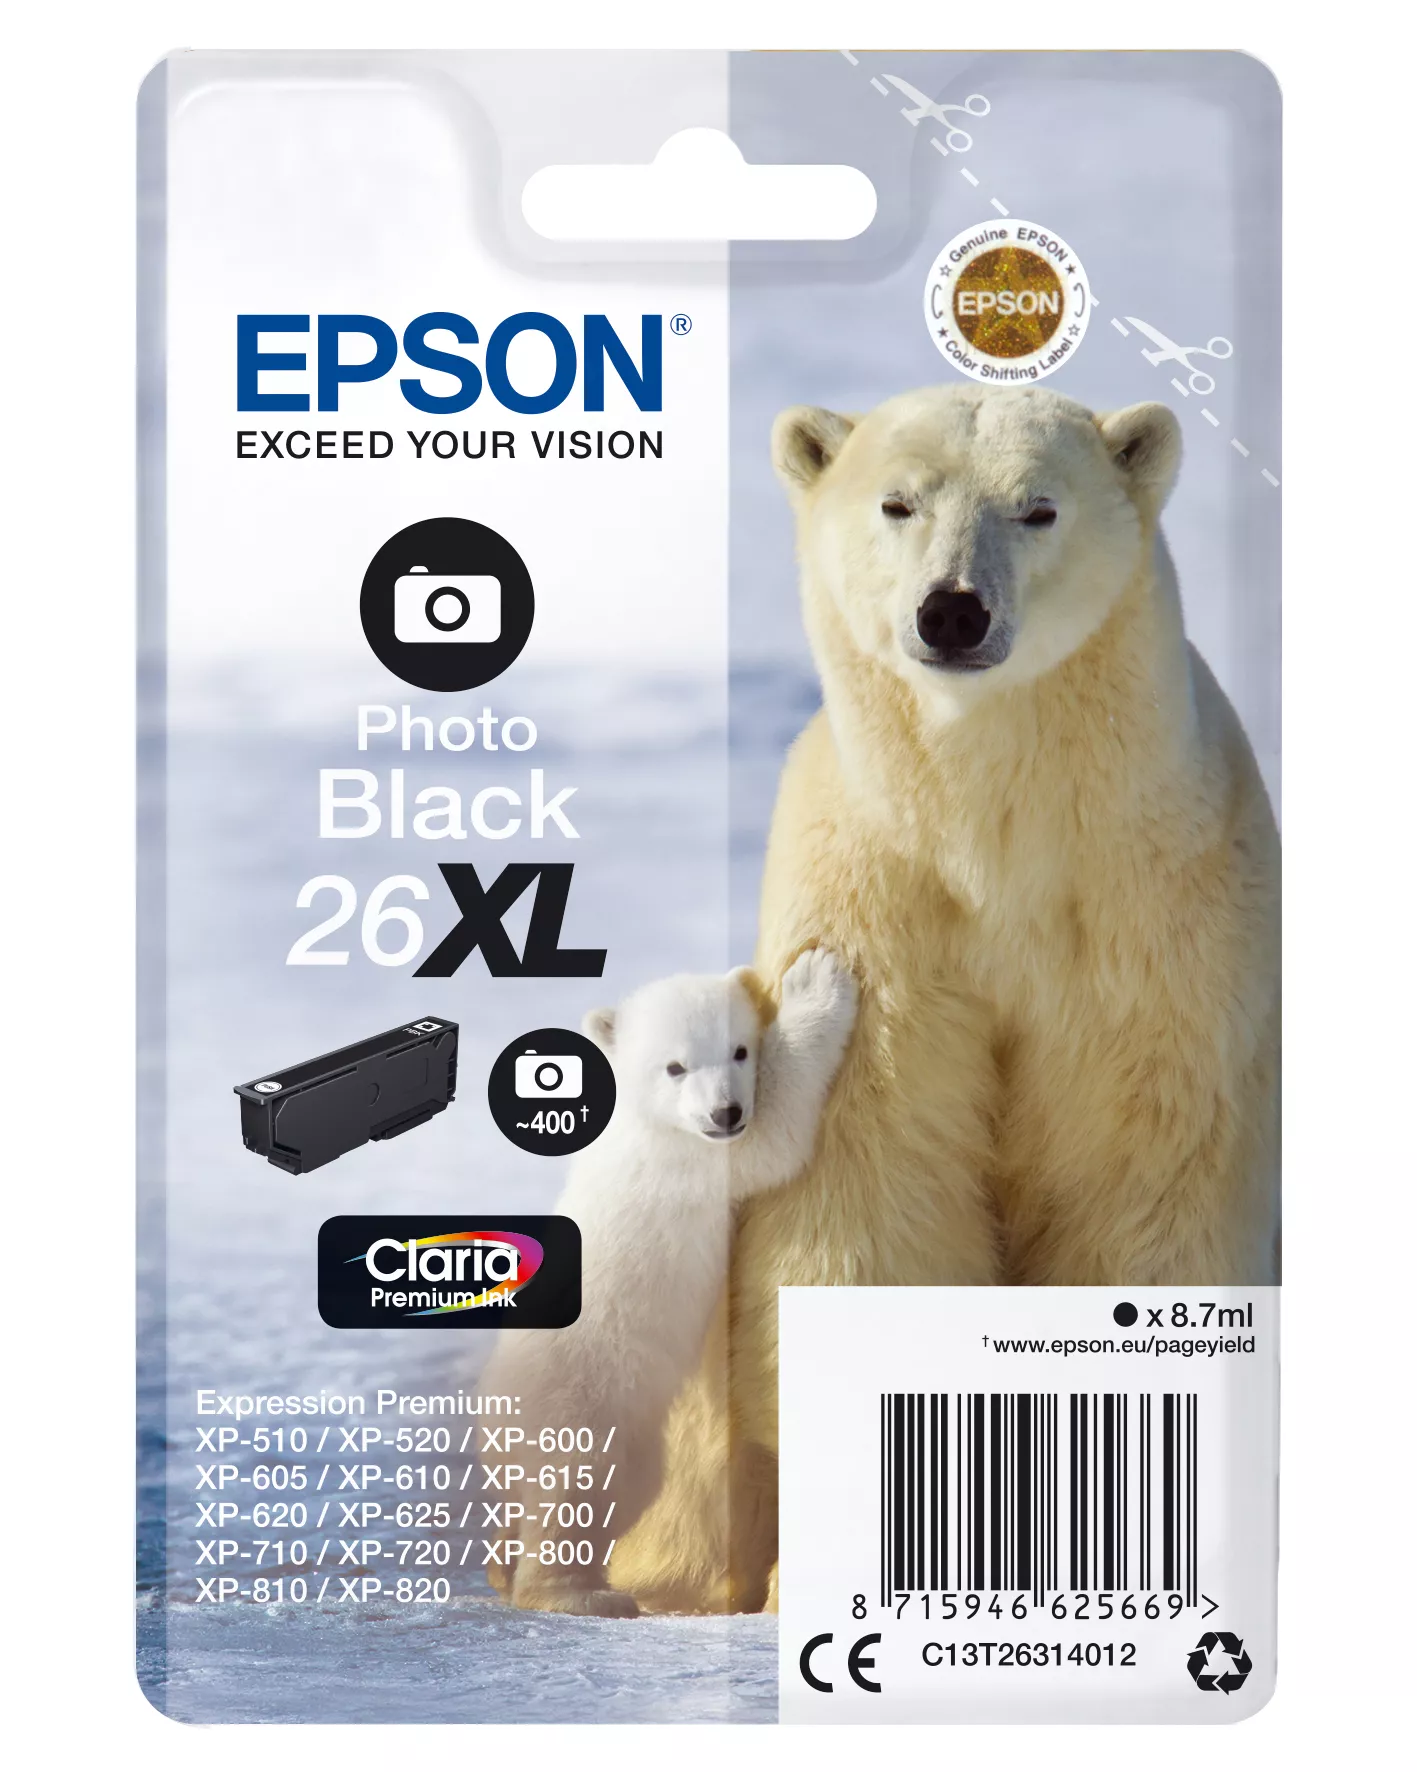 Vente EPSON 26XL cartouche dencre photo noir haute capacité 8 au meilleur prix